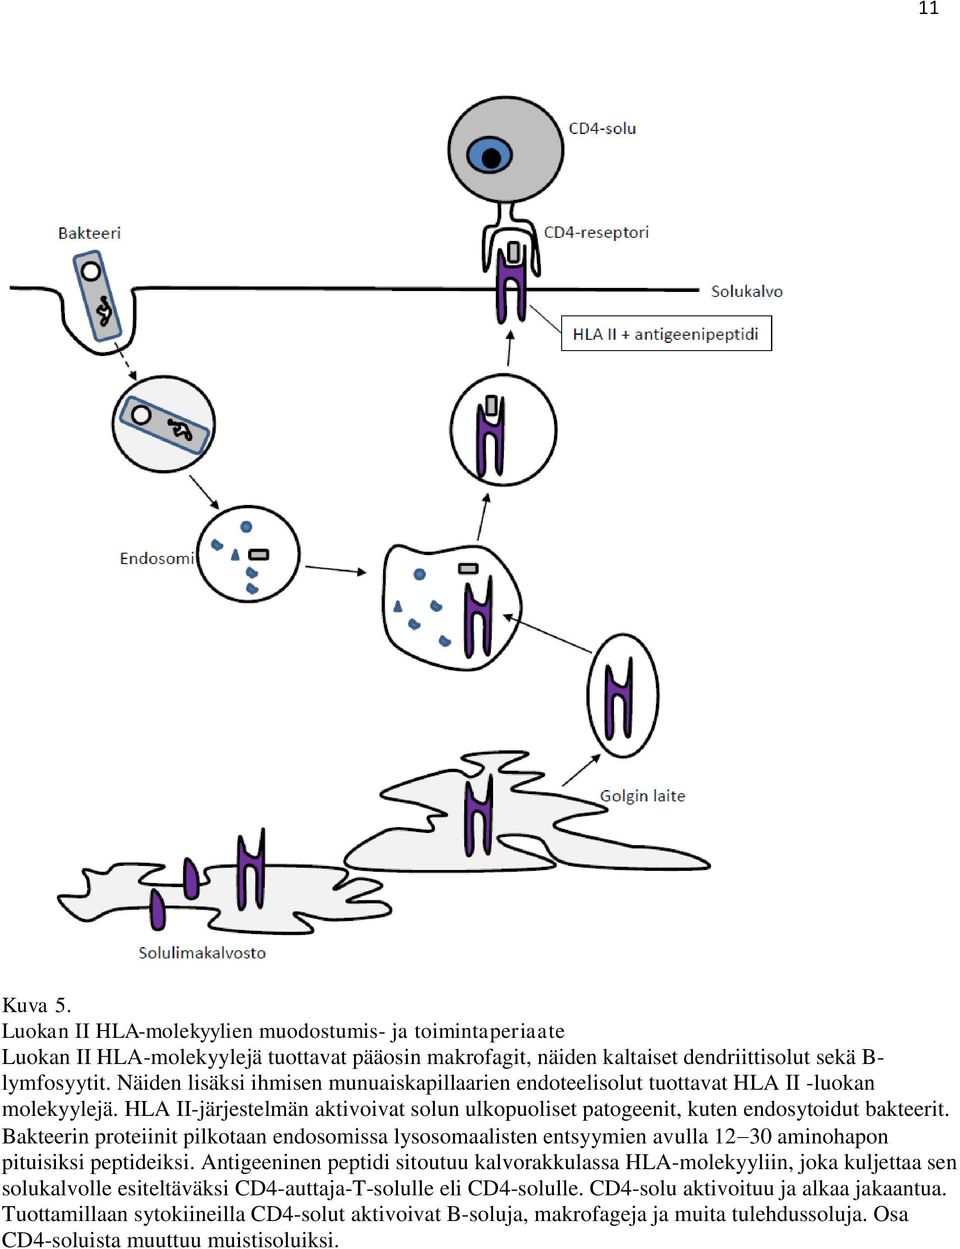 Bakteerin proteiinit pilkotaan endosomissa lysosomaalisten entsyymien avulla 130 aminohapon pituisiksi peptideiksi.